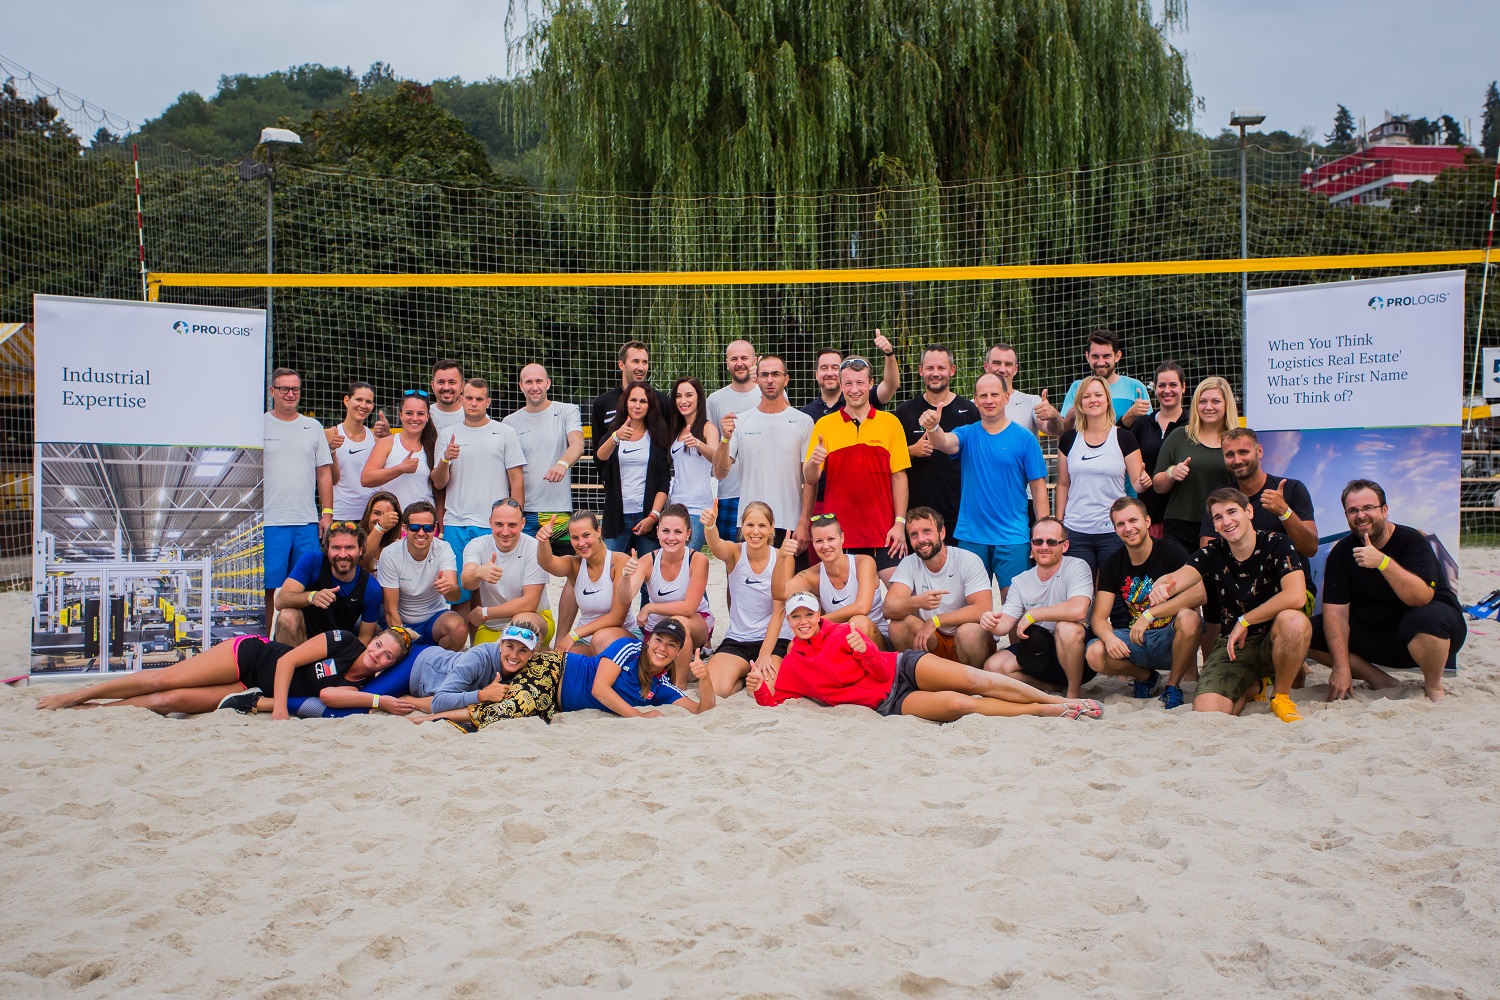 Turnaj v plážovom volejbale Prologis 2018, Česká republika